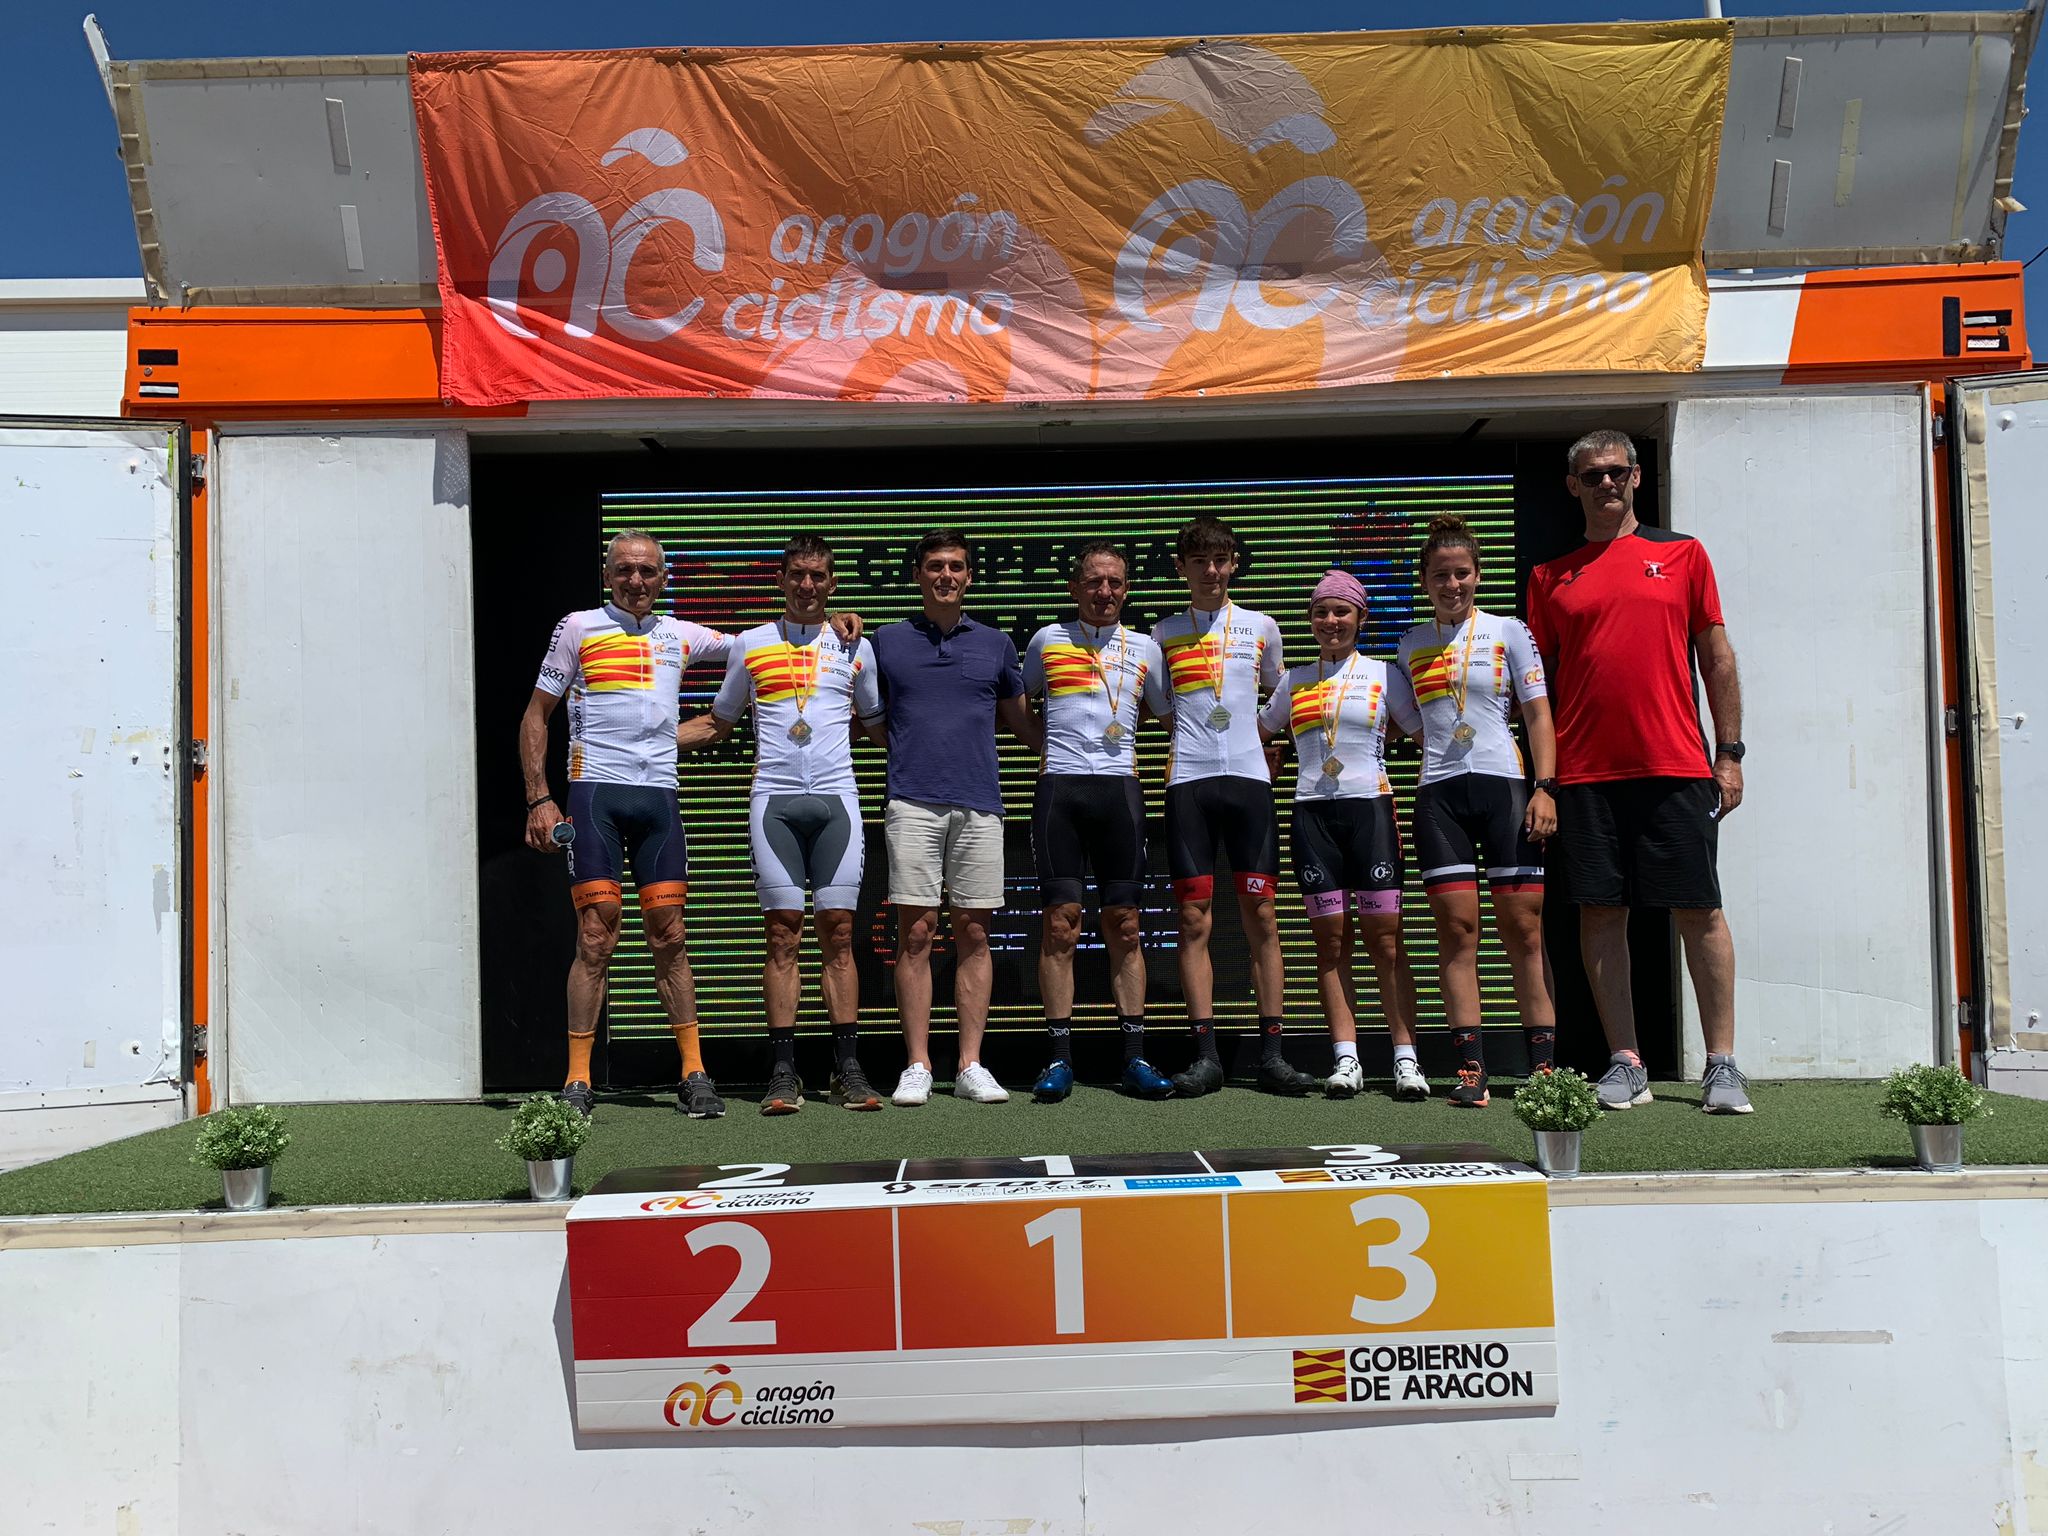 Los aragoneses han disputado el Campeonato Aragón Ruta en Torrellas